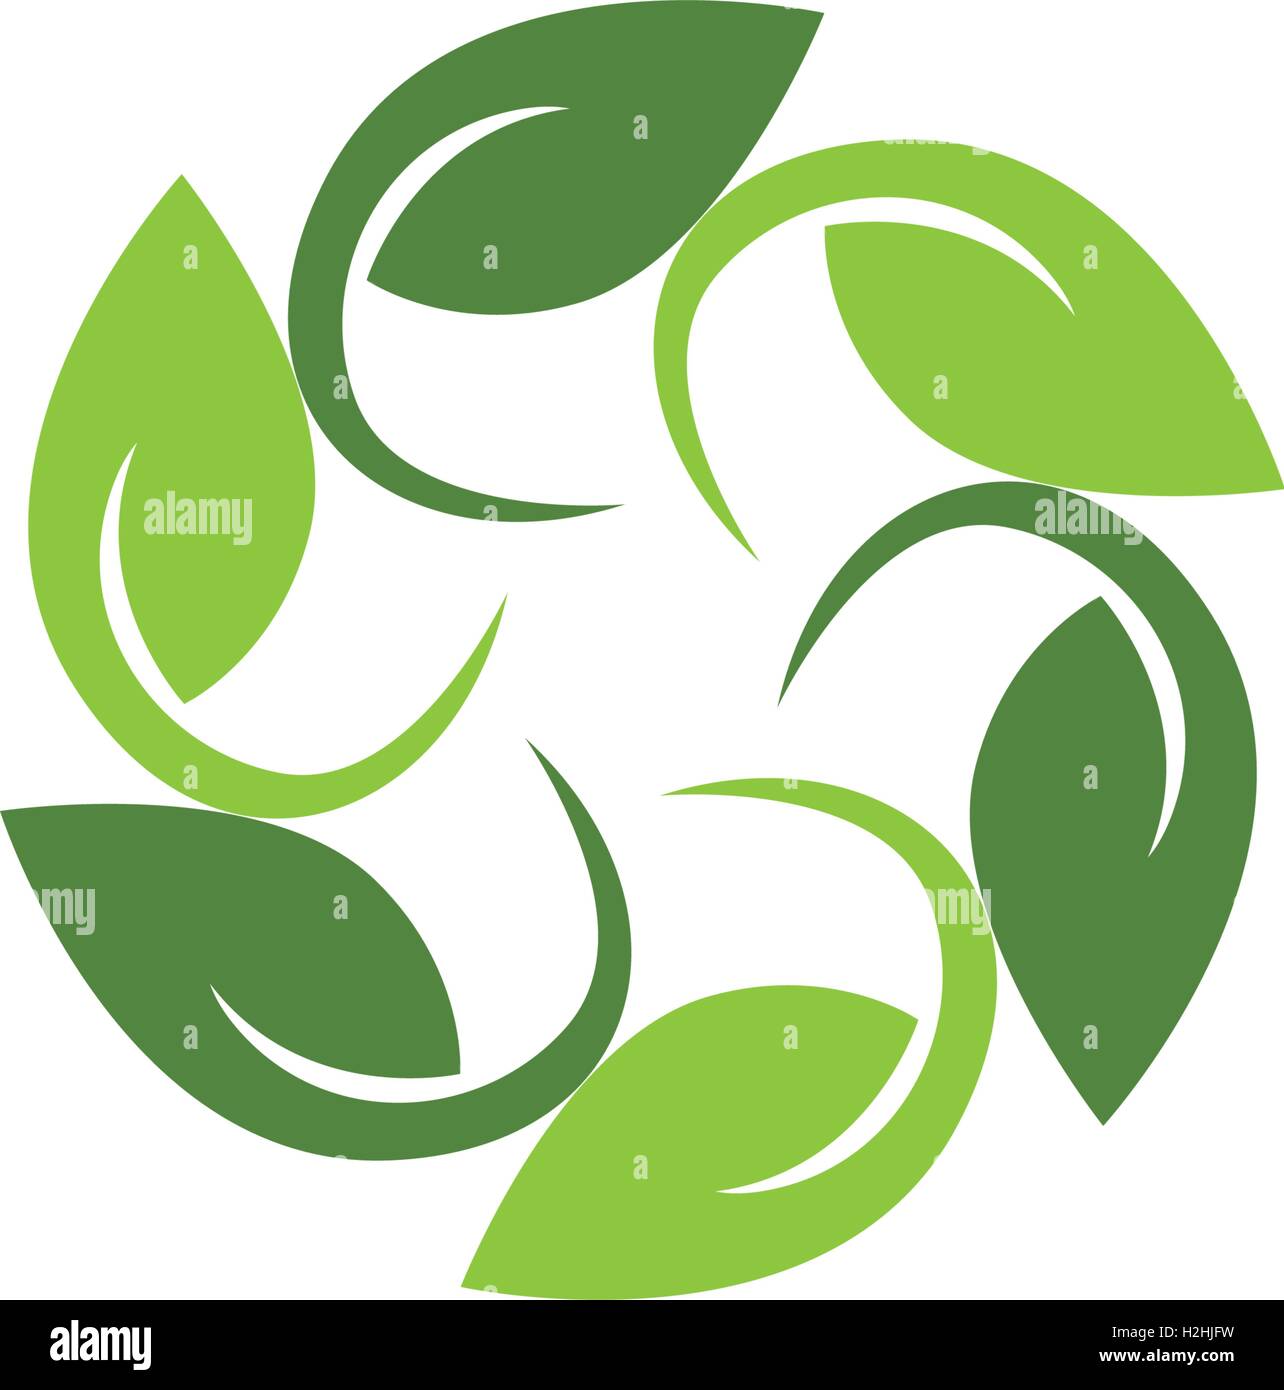 Feuille d'arbre logo vector design, eco-friendly concept. Illustration de Vecteur